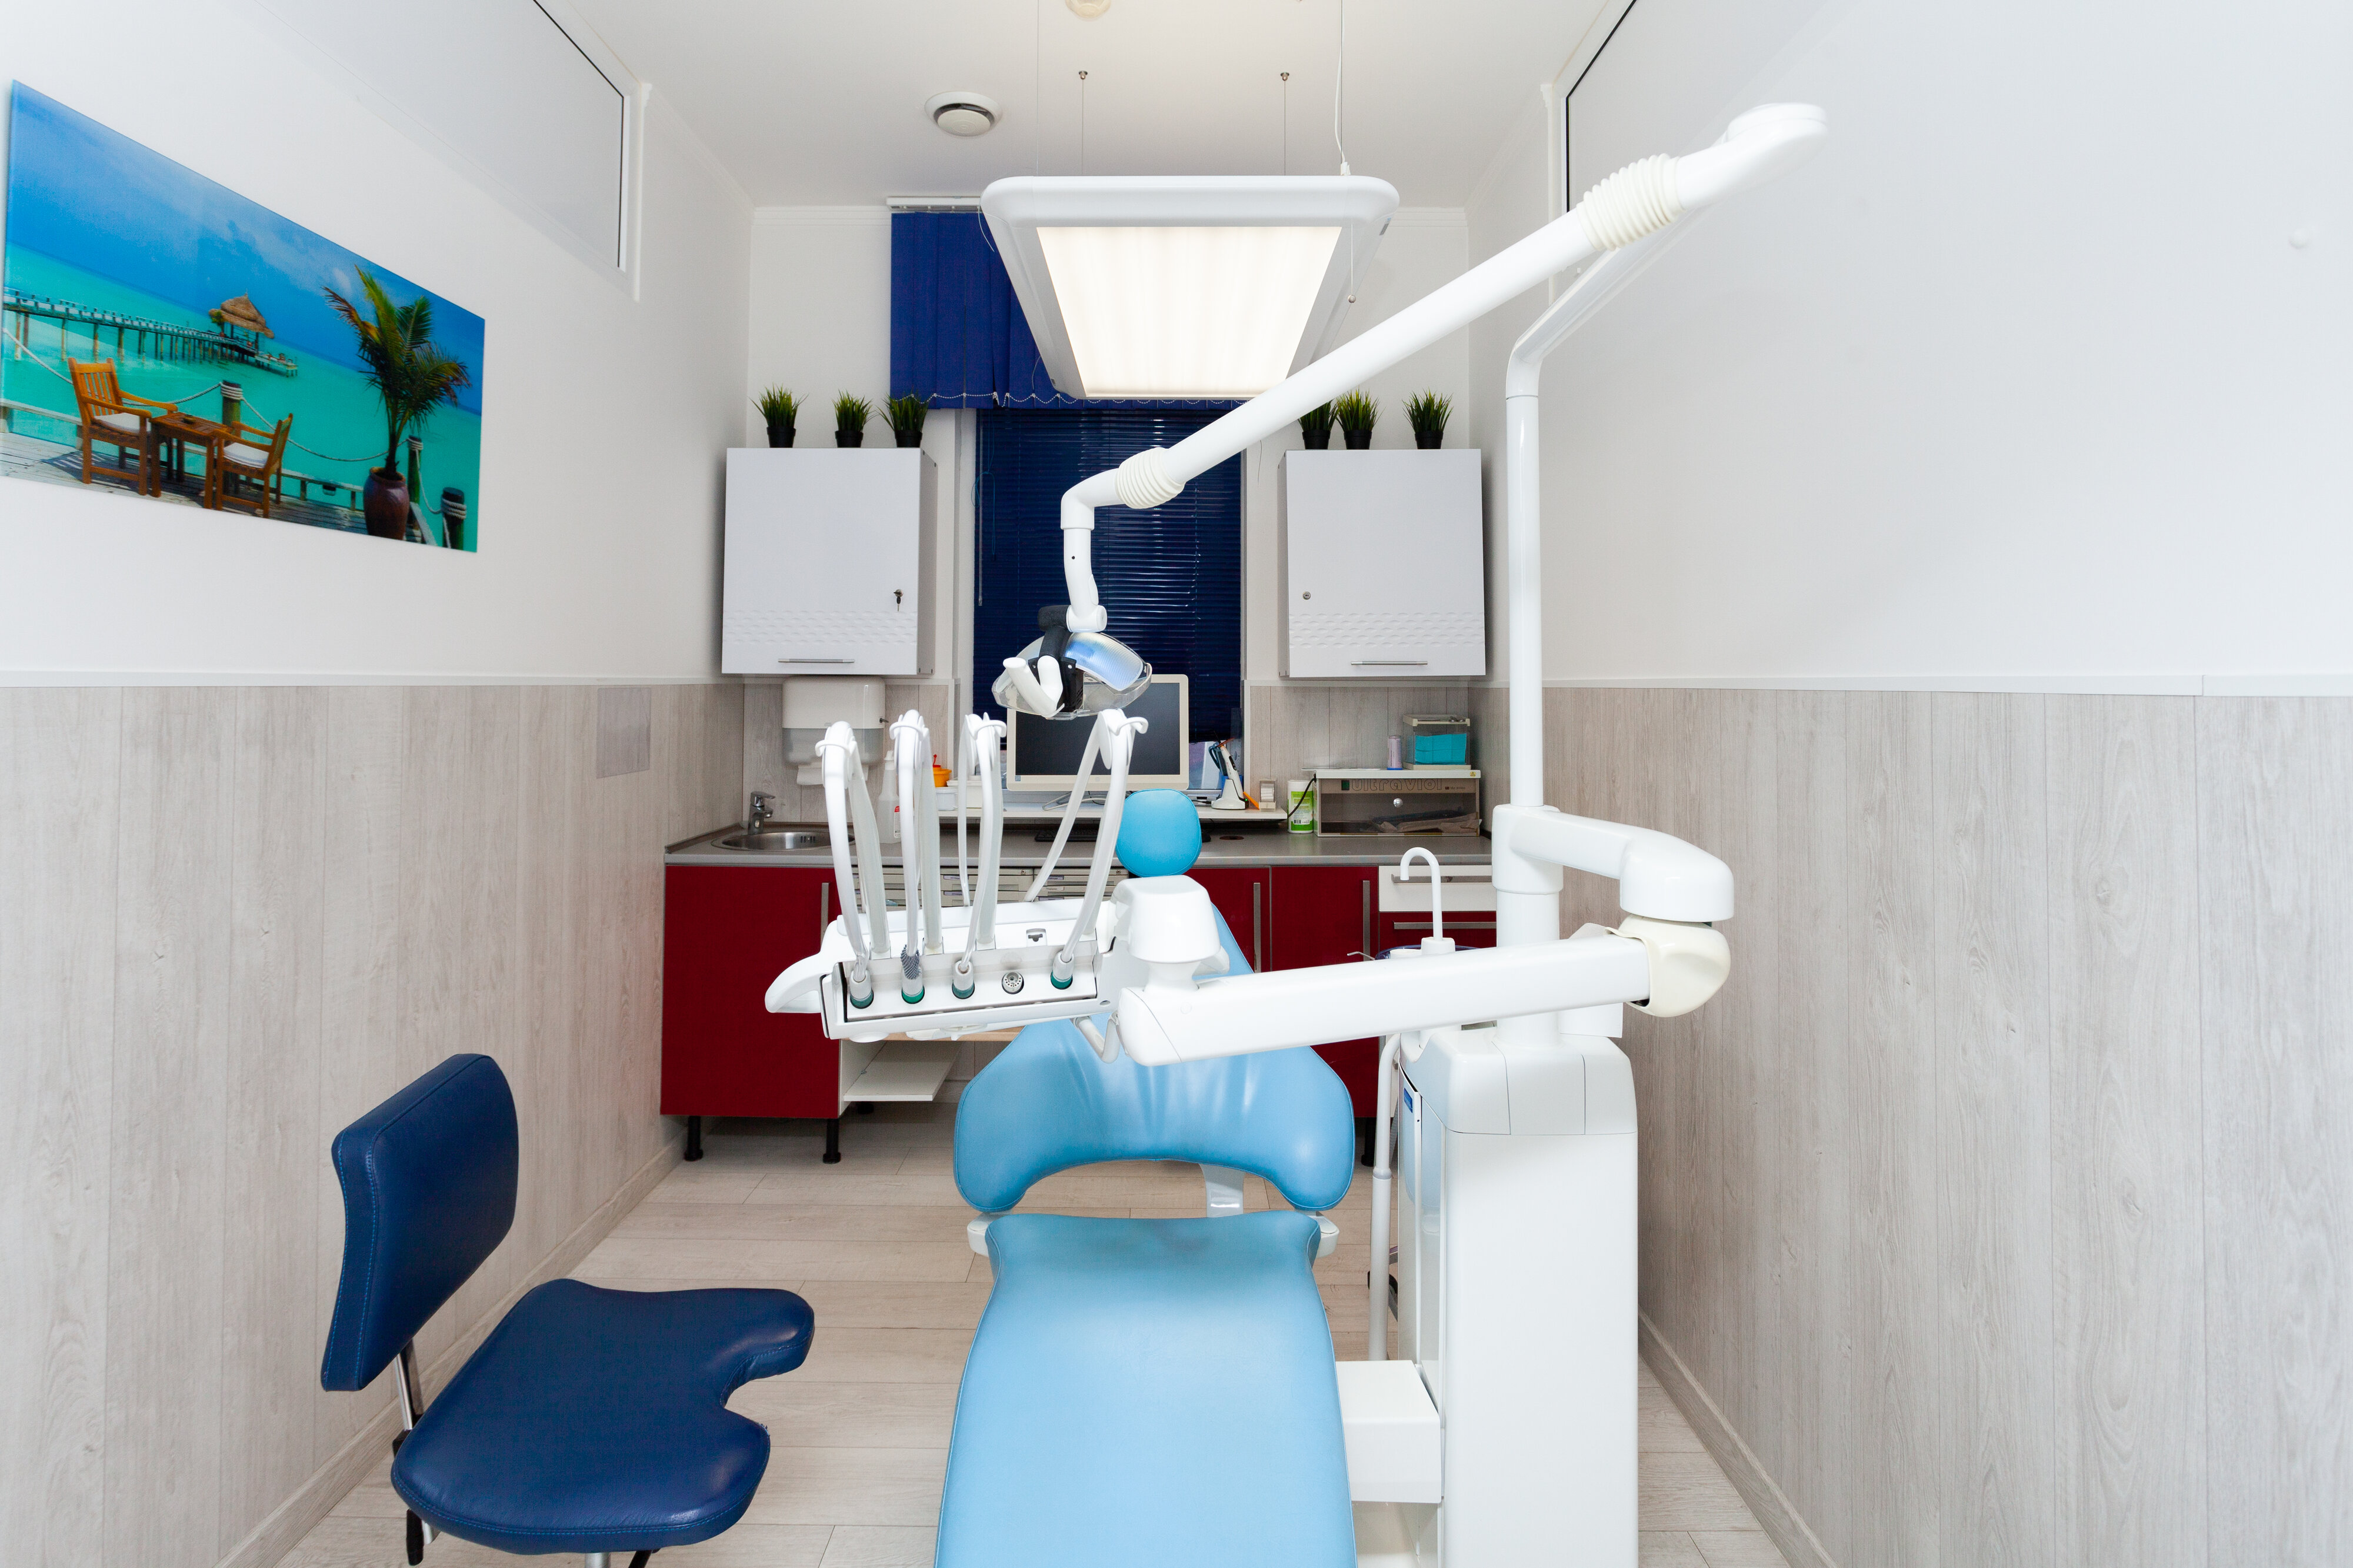 Кропоткин стоматологическая